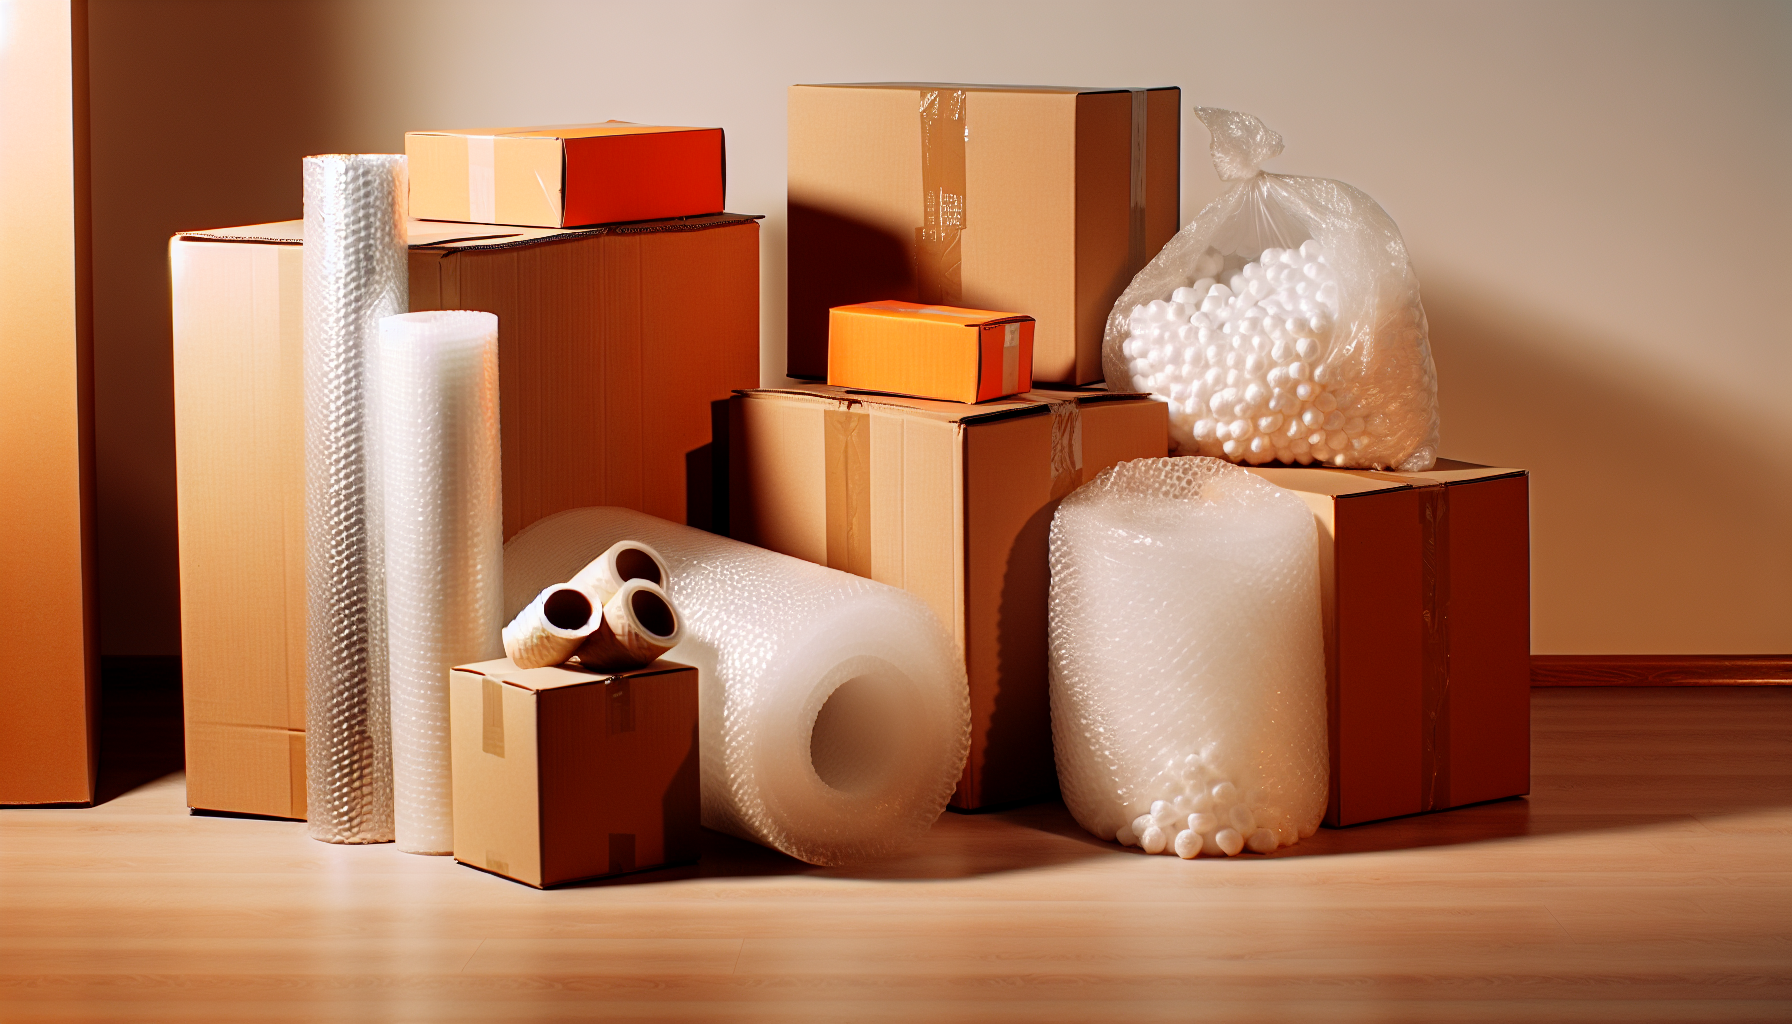 Emballage et protection de vos biens lors du déménagement